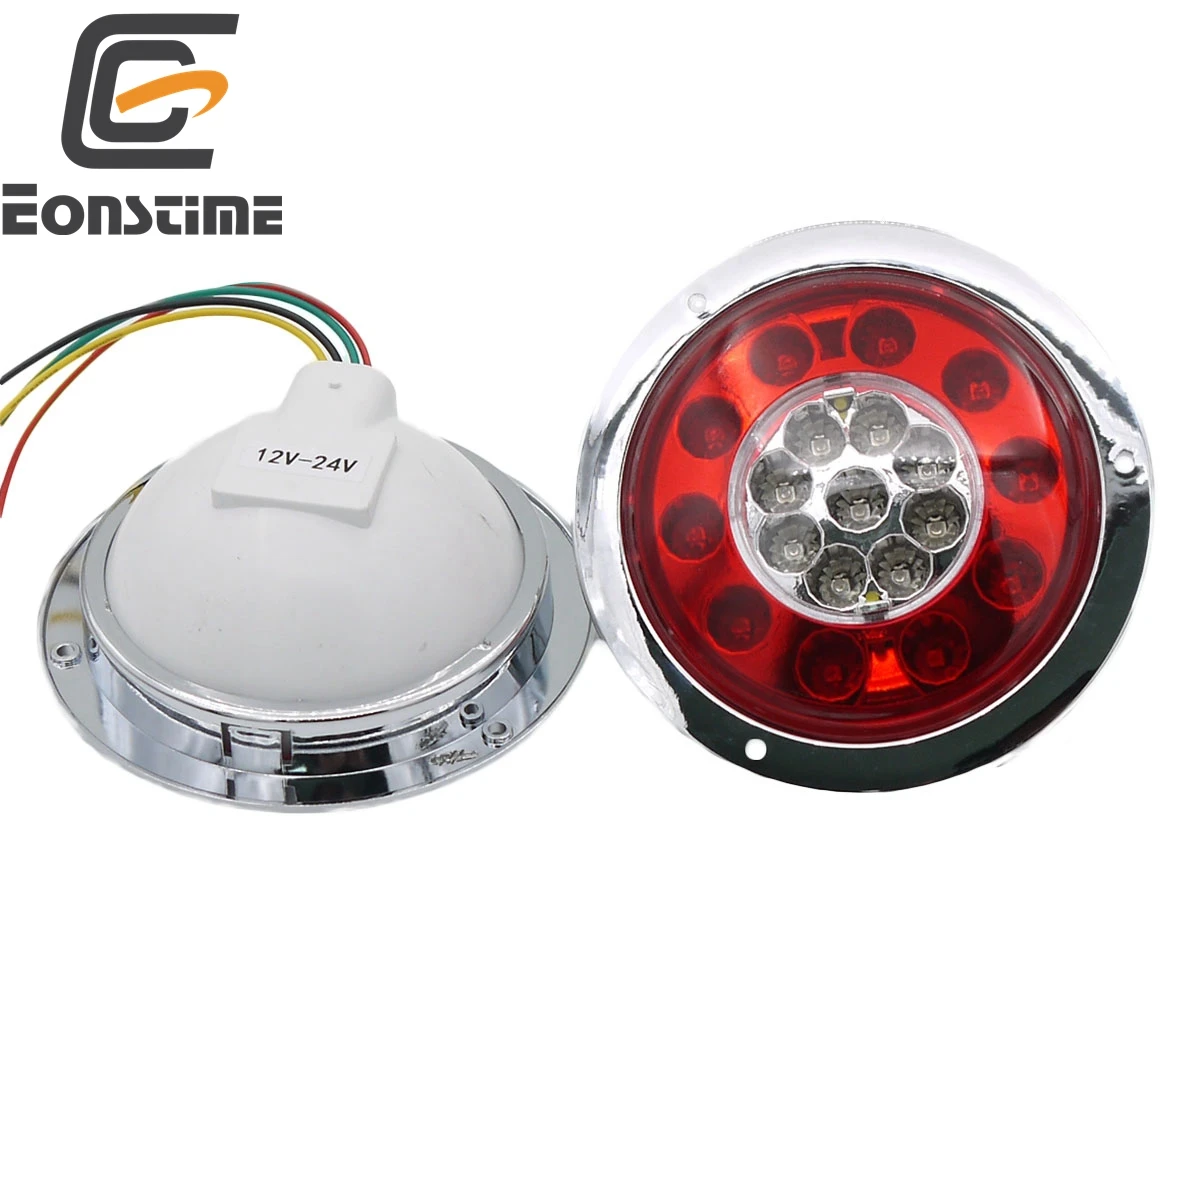 Eonstime 2 шт 12 В 2 Вт 10 светодиодный автомобильный прицеп для грузовика задний светильник стоп-индикатор задний фонарь сигнала поворота лампа E4 E-mark